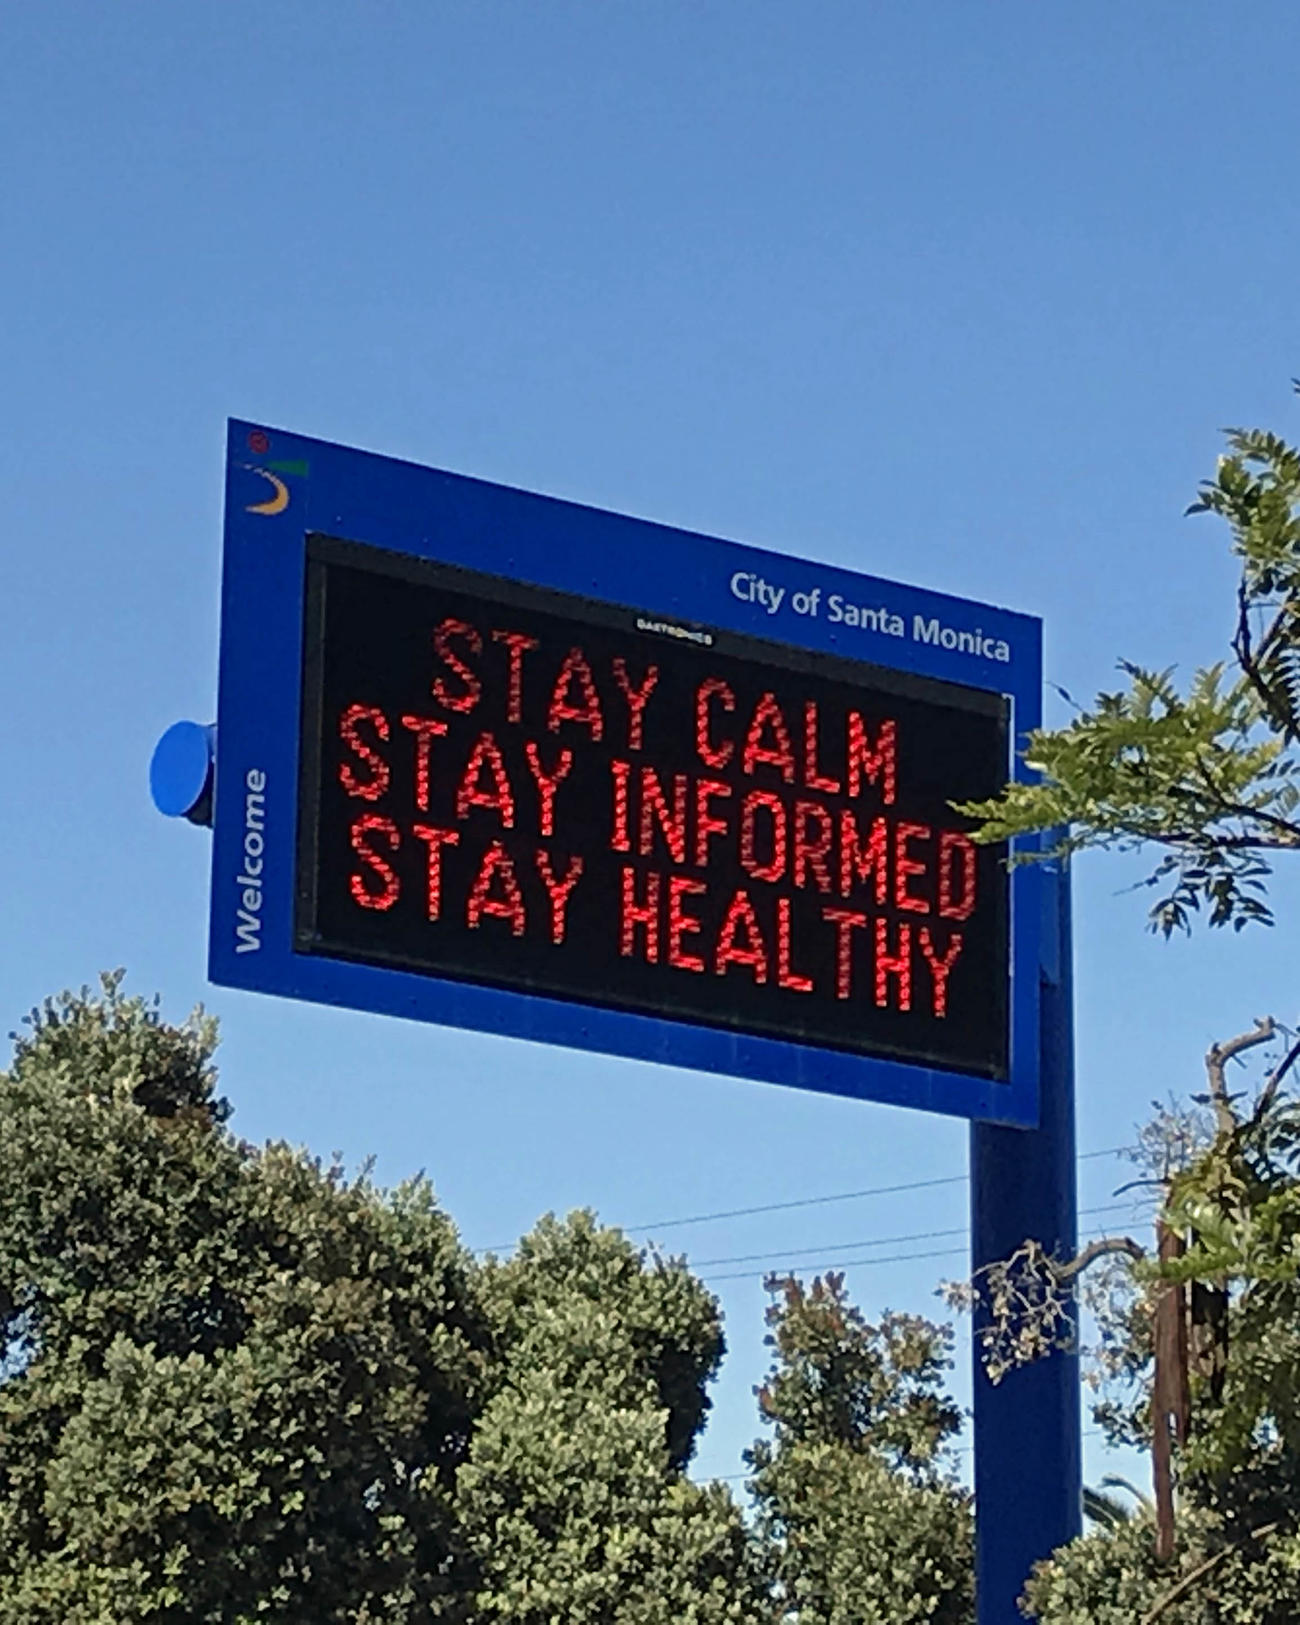 サンタモニカ市では街中には「冷静に行動し、情報を取集し、健康でいるように」との注意喚起の電光掲示板も